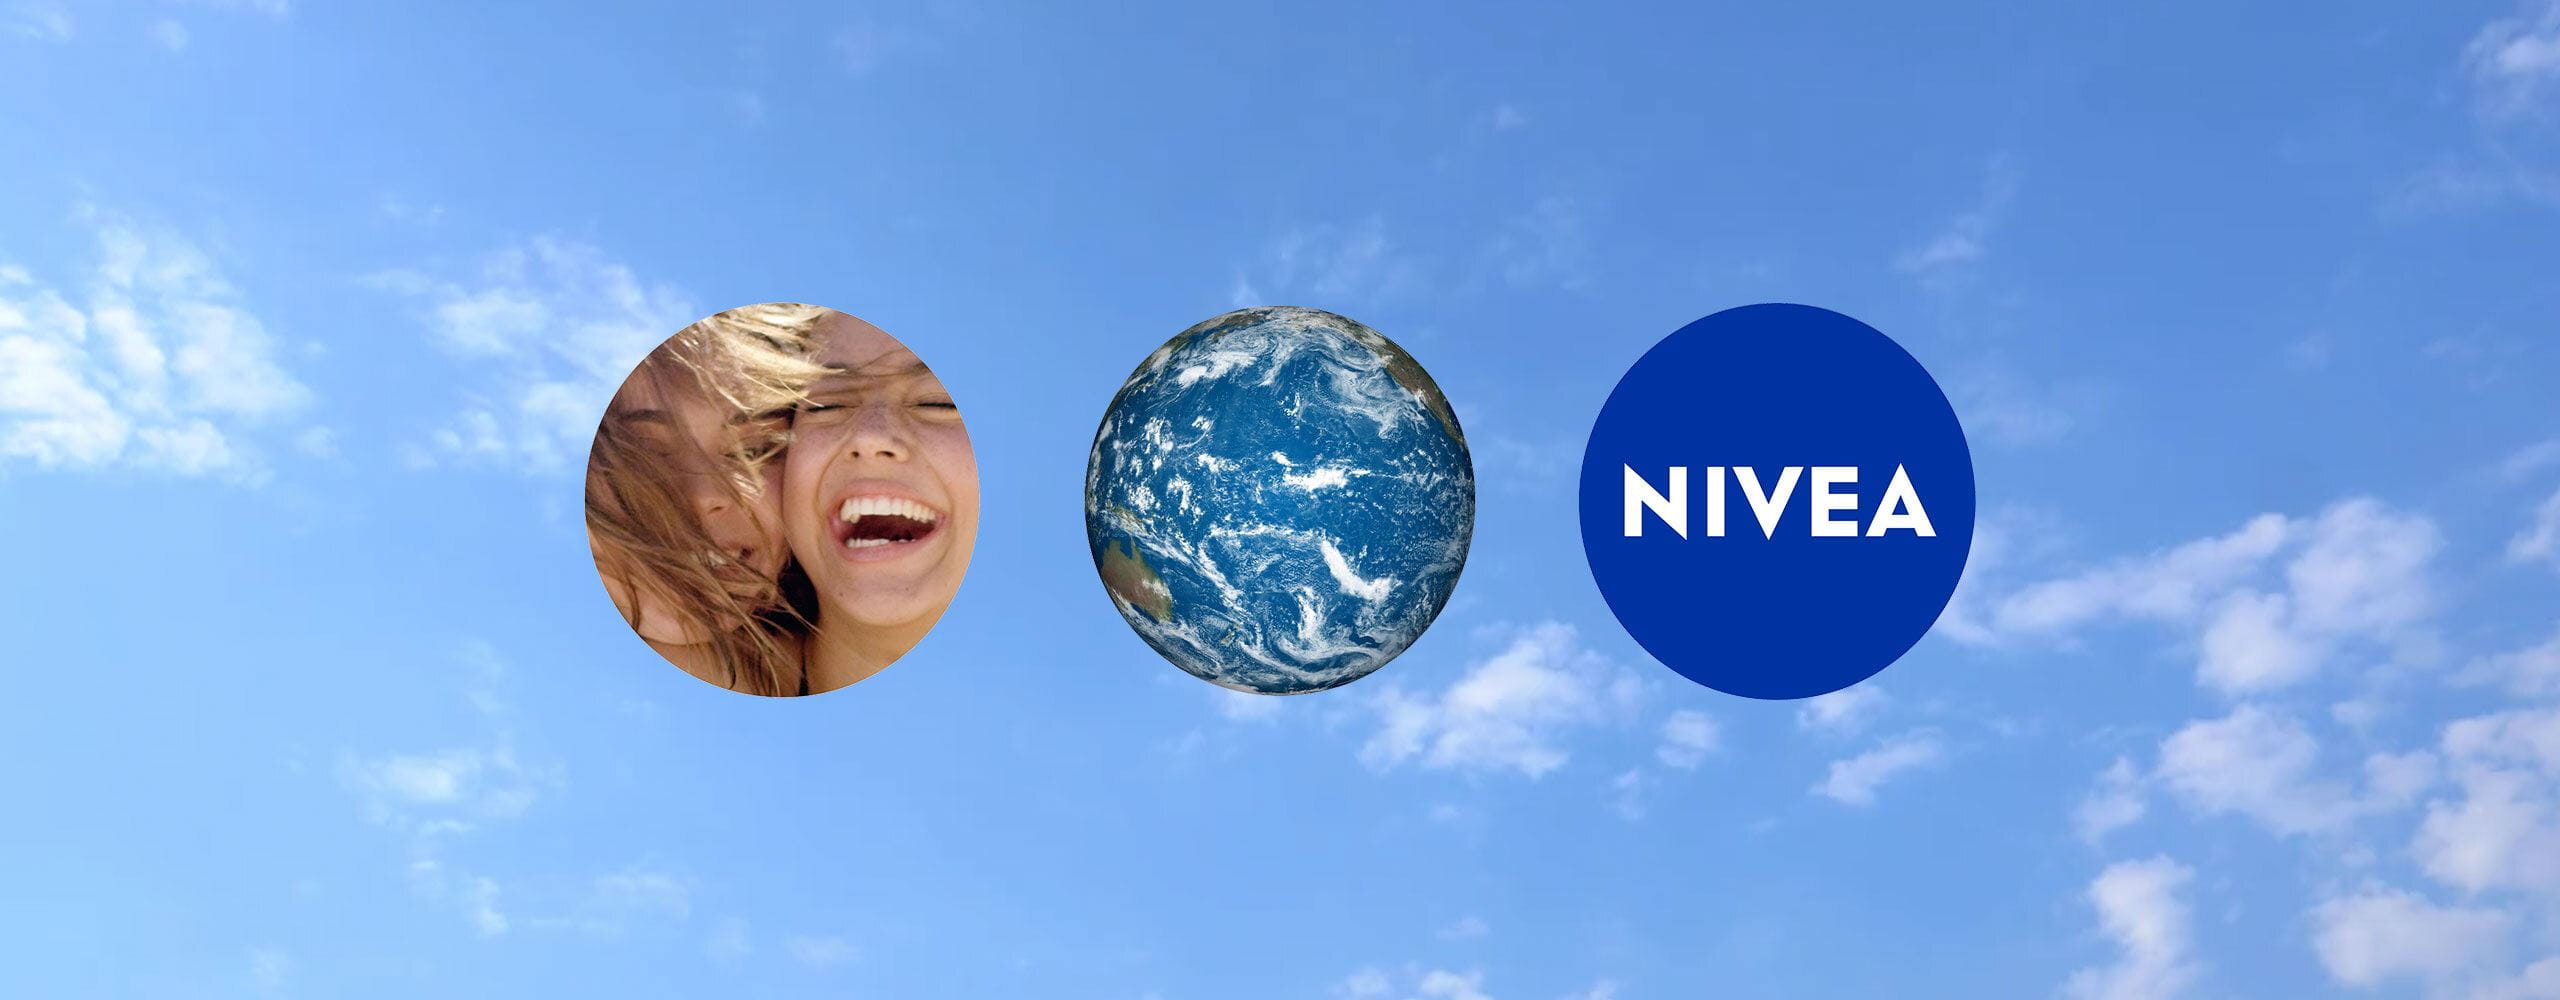 La durabilité chez NIVEA